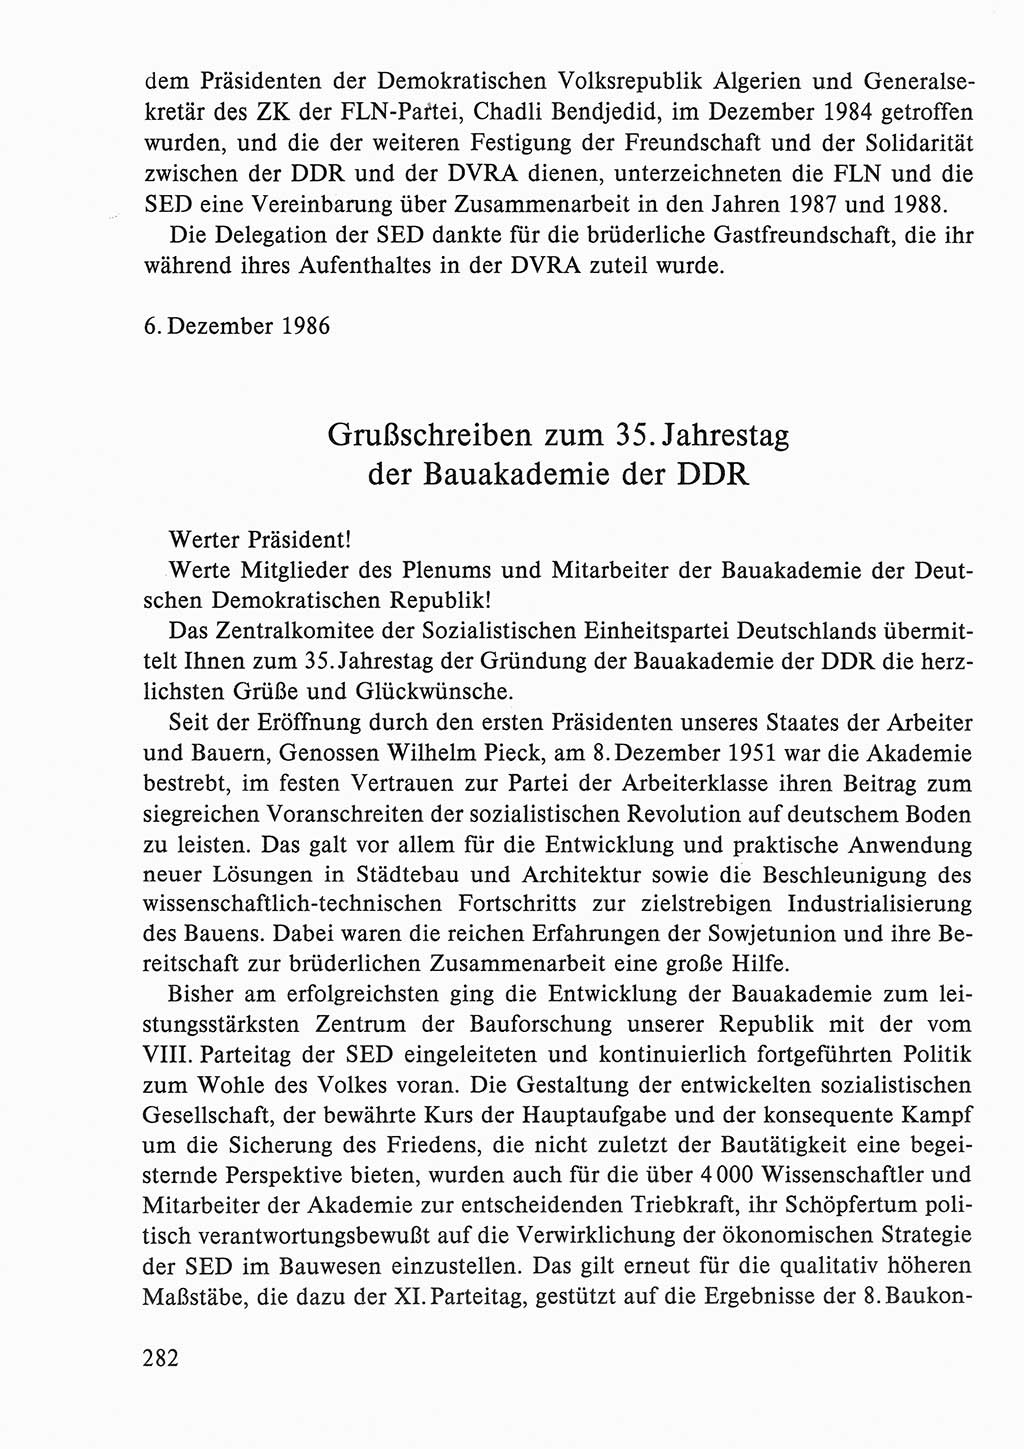 Dokumente der Sozialistischen Einheitspartei Deutschlands (SED) [Deutsche Demokratische Republik (DDR)] 1986-1987, Seite 282 (Dok. SED DDR 1986-1987, S. 282)